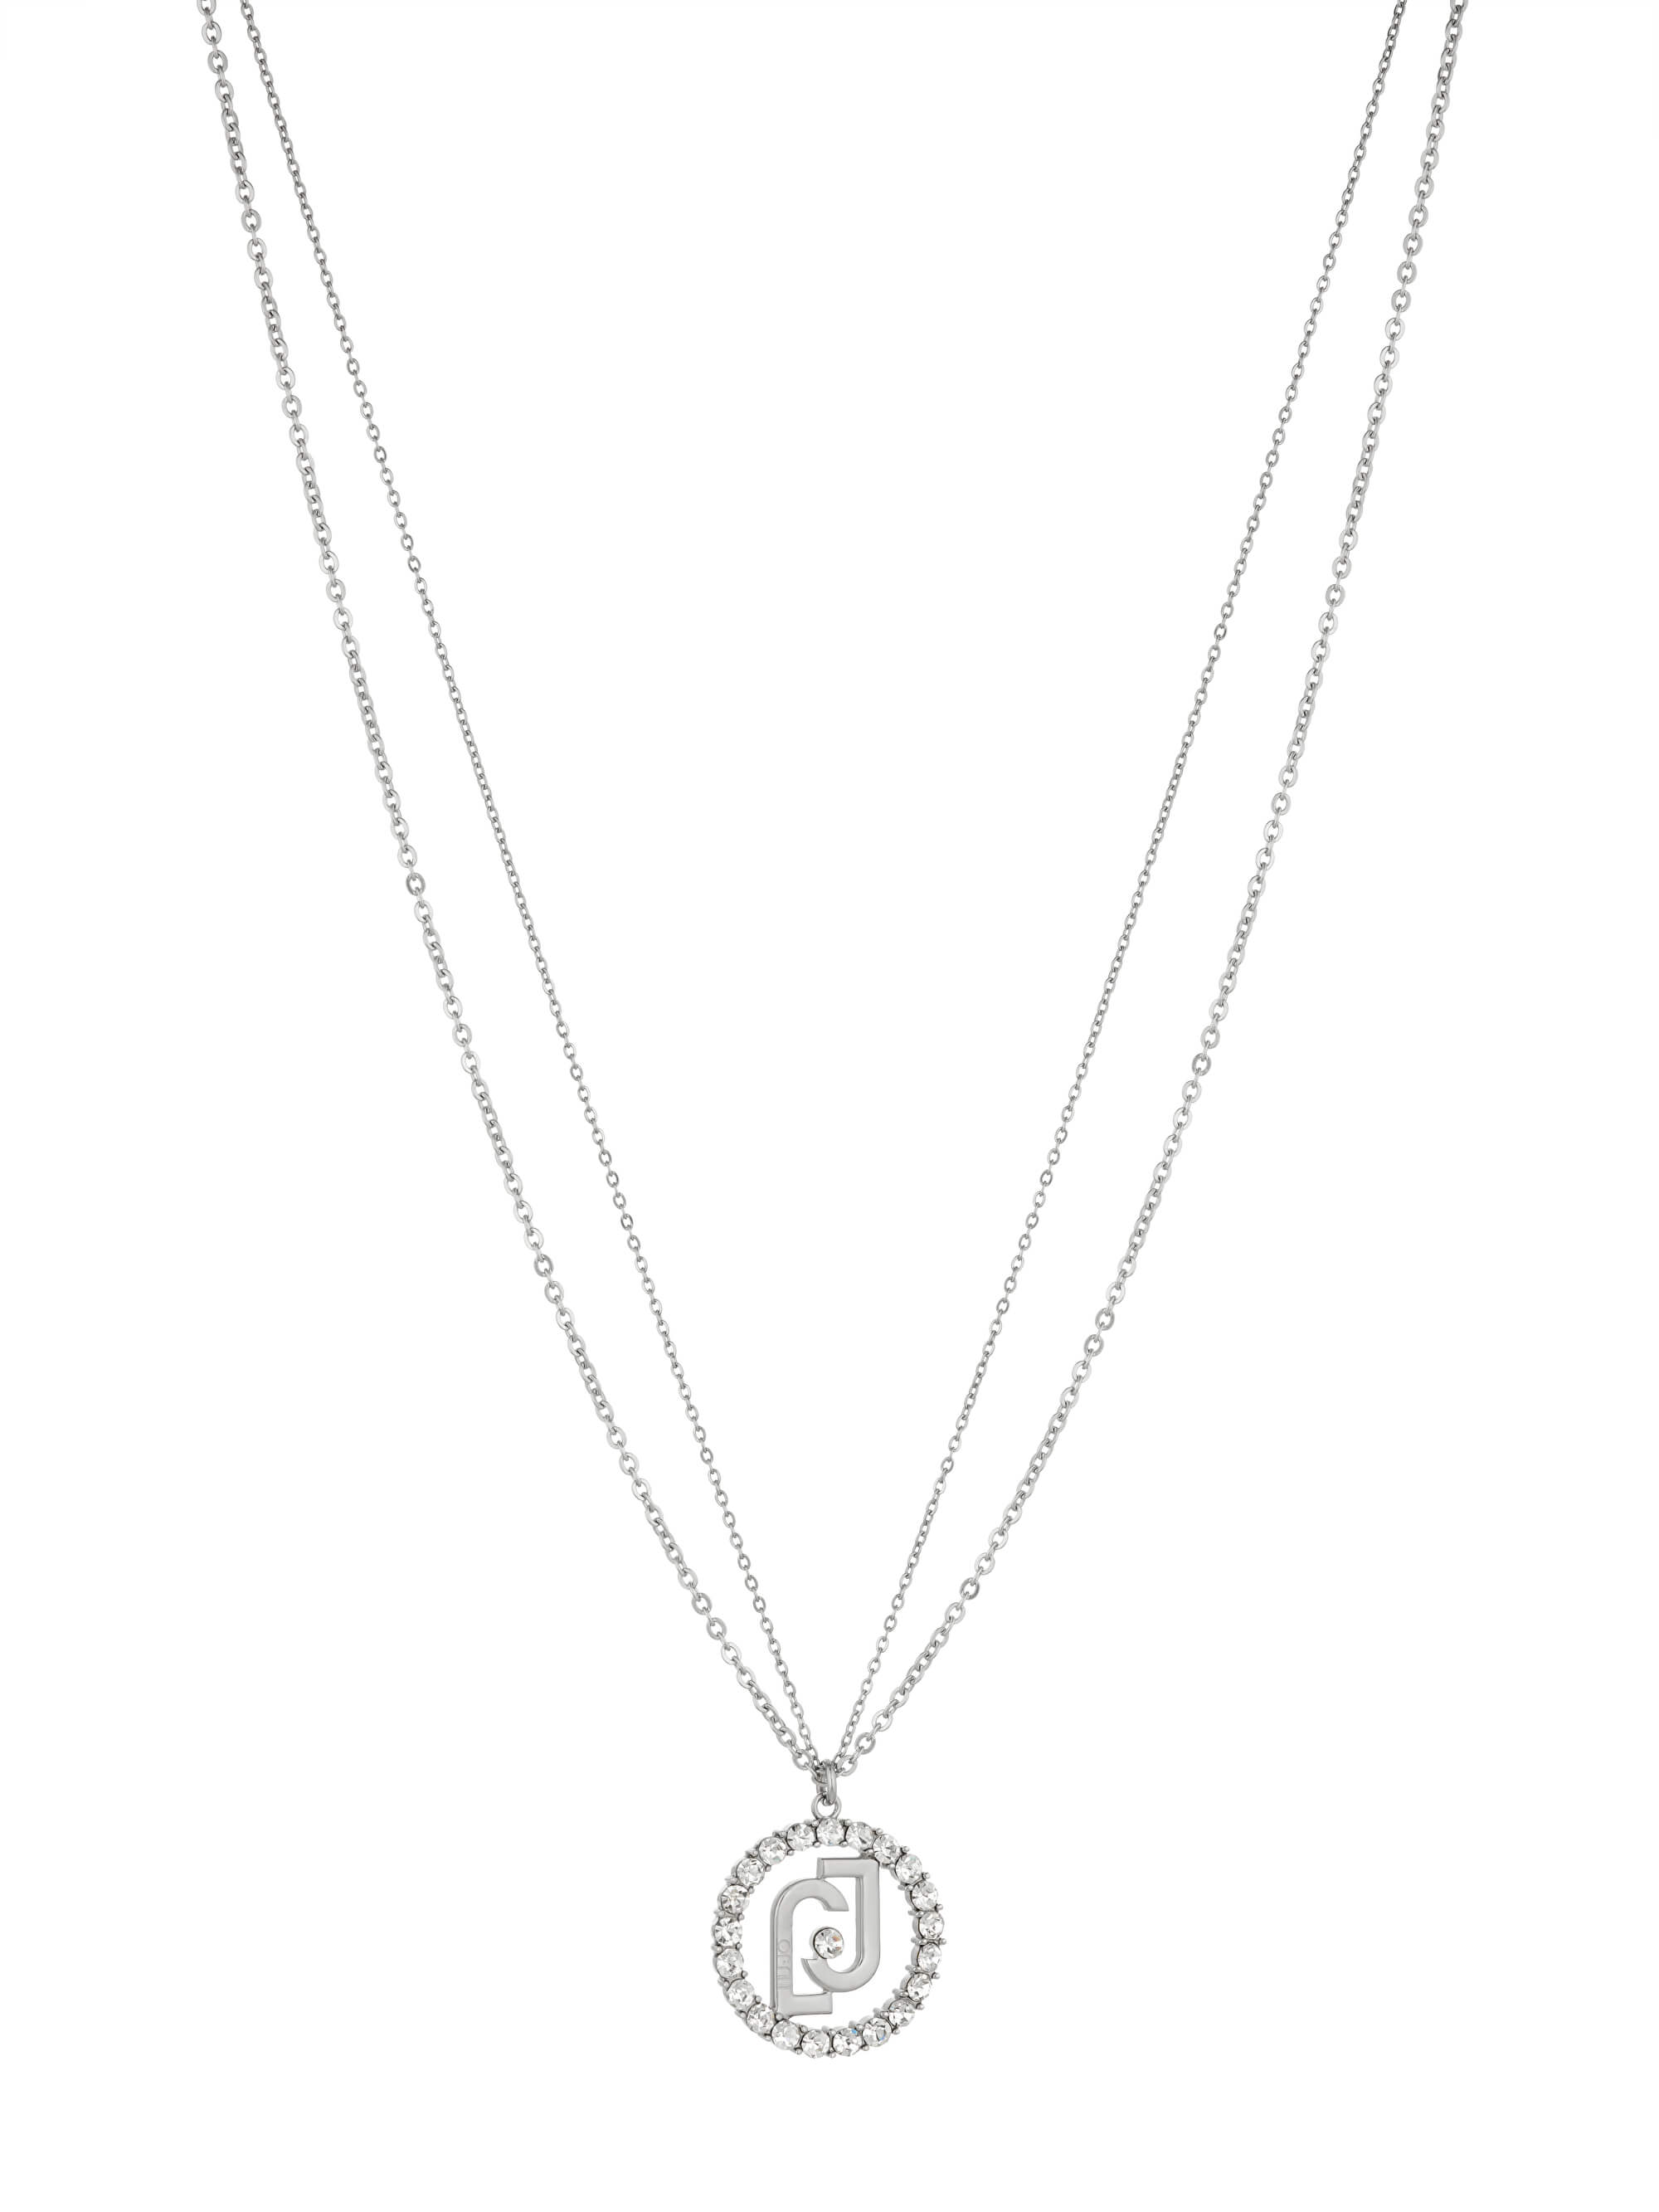 Liu Jo Módní ocelový náhrdelník Linea Logo LJ1575